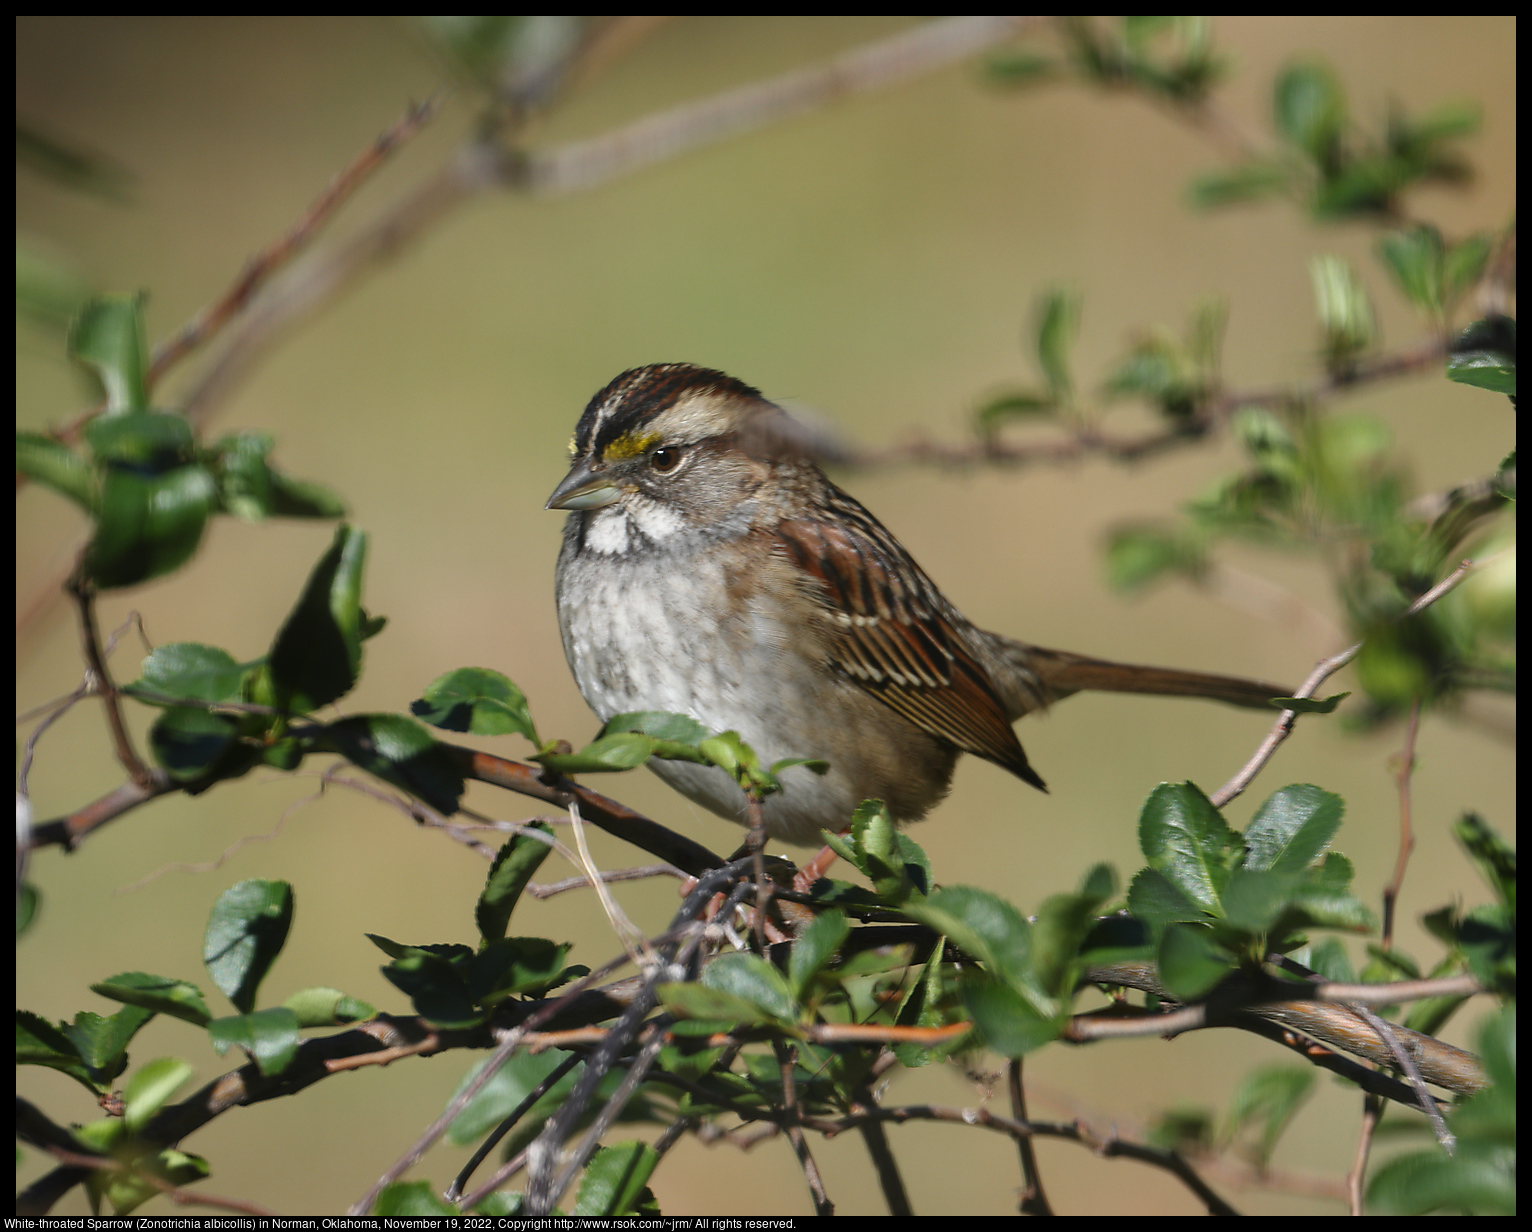 White-throated Sparrow (Zonotrichia albicollis) in Norman, Oklahoma, November 19, 2022